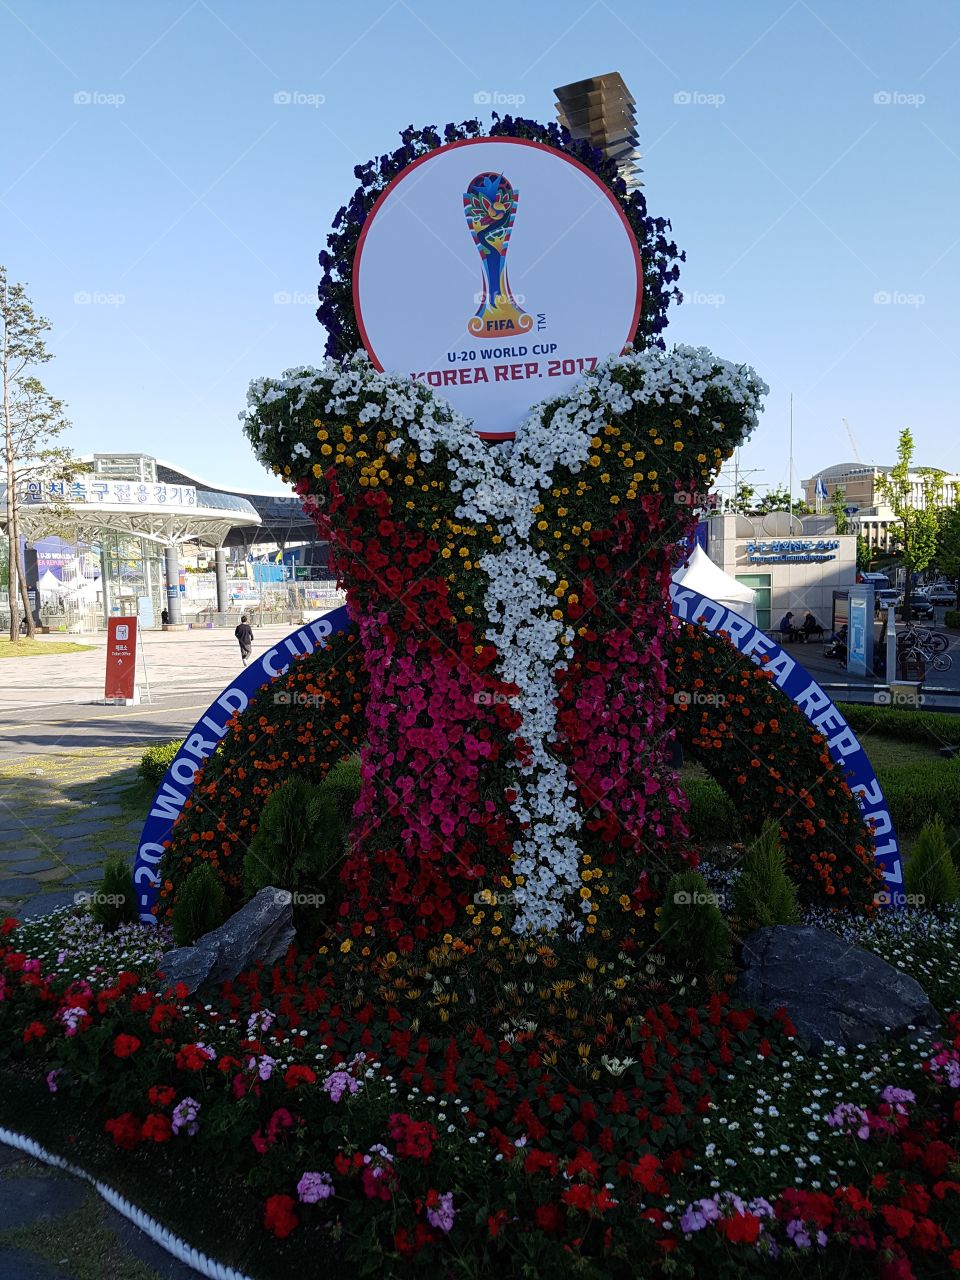 FIFA U -20 In South Korea 